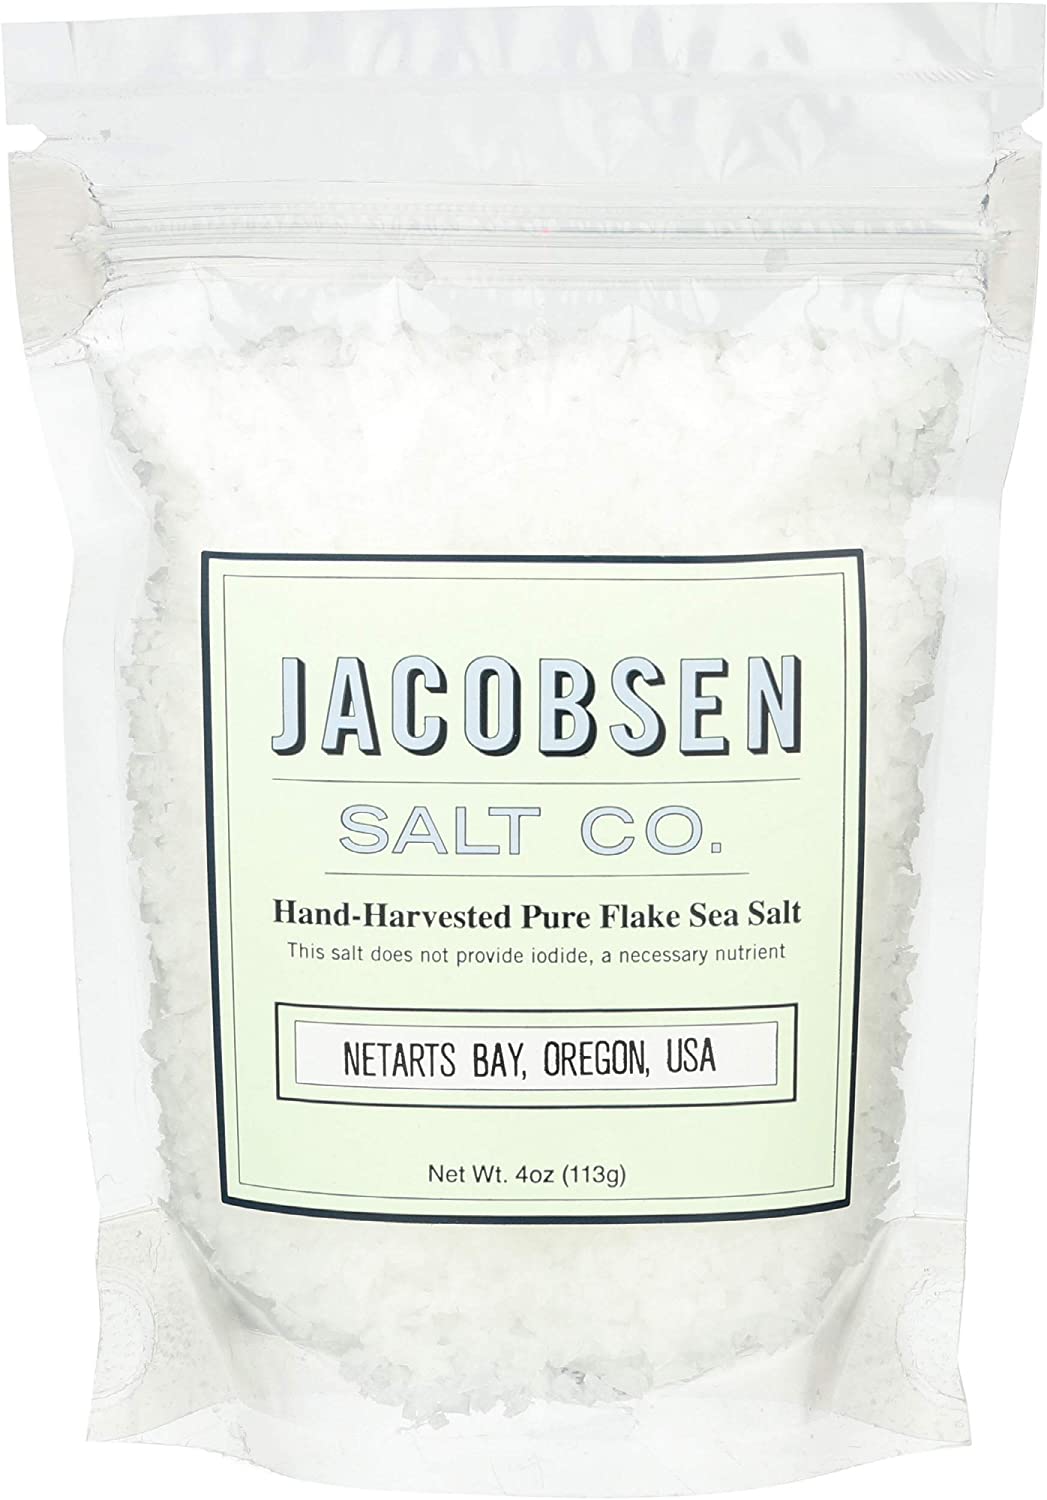 Hand-Harvested Pure Flake Sea Salt